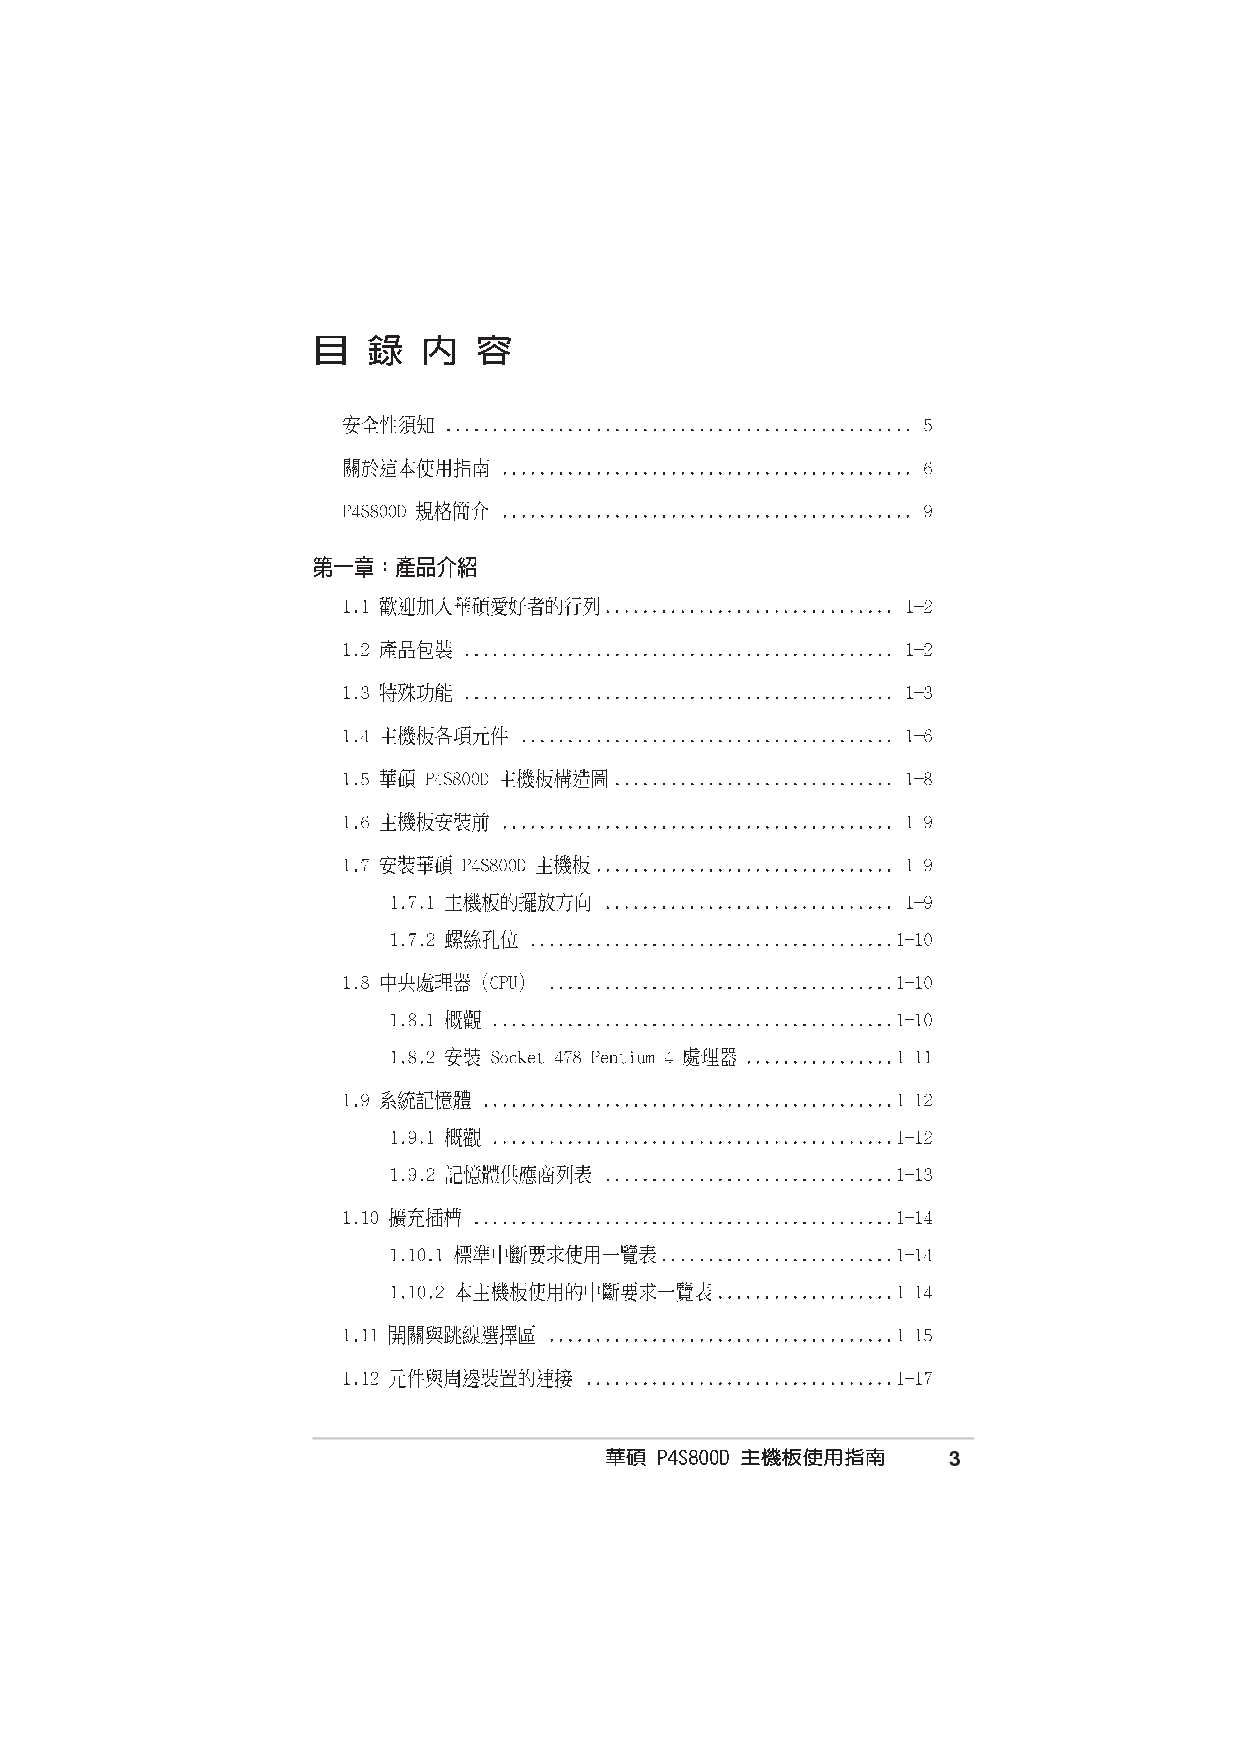 华硕 Asus P4S800D 用户手册 第2页